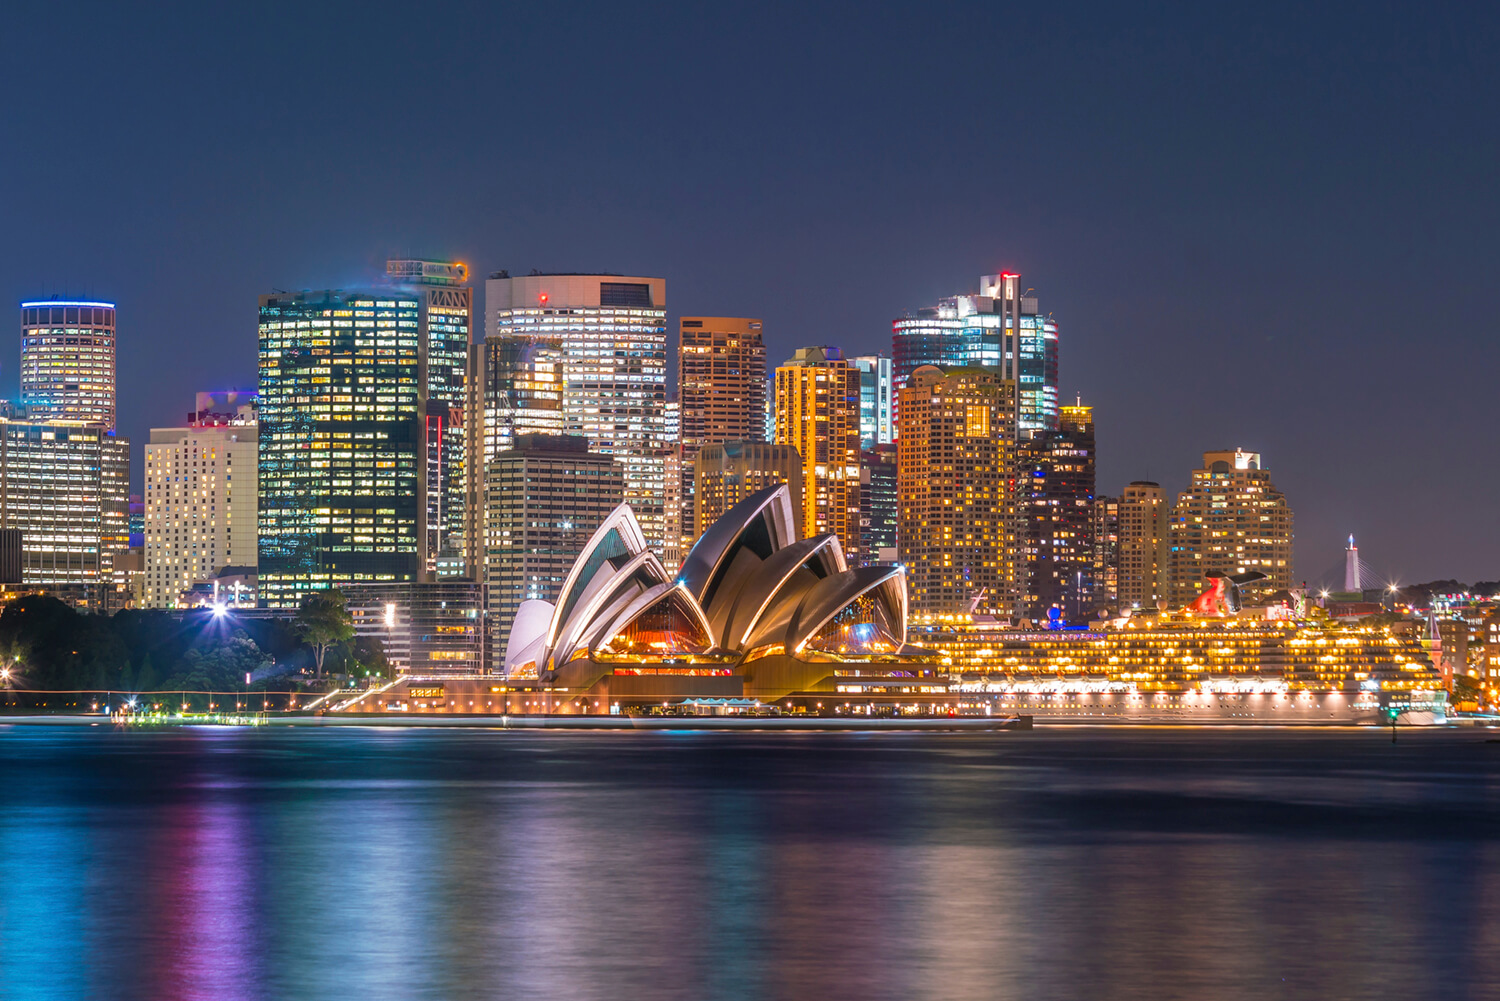 Kurs językowy w Australii, Sydney nocą, widok na budynek opery